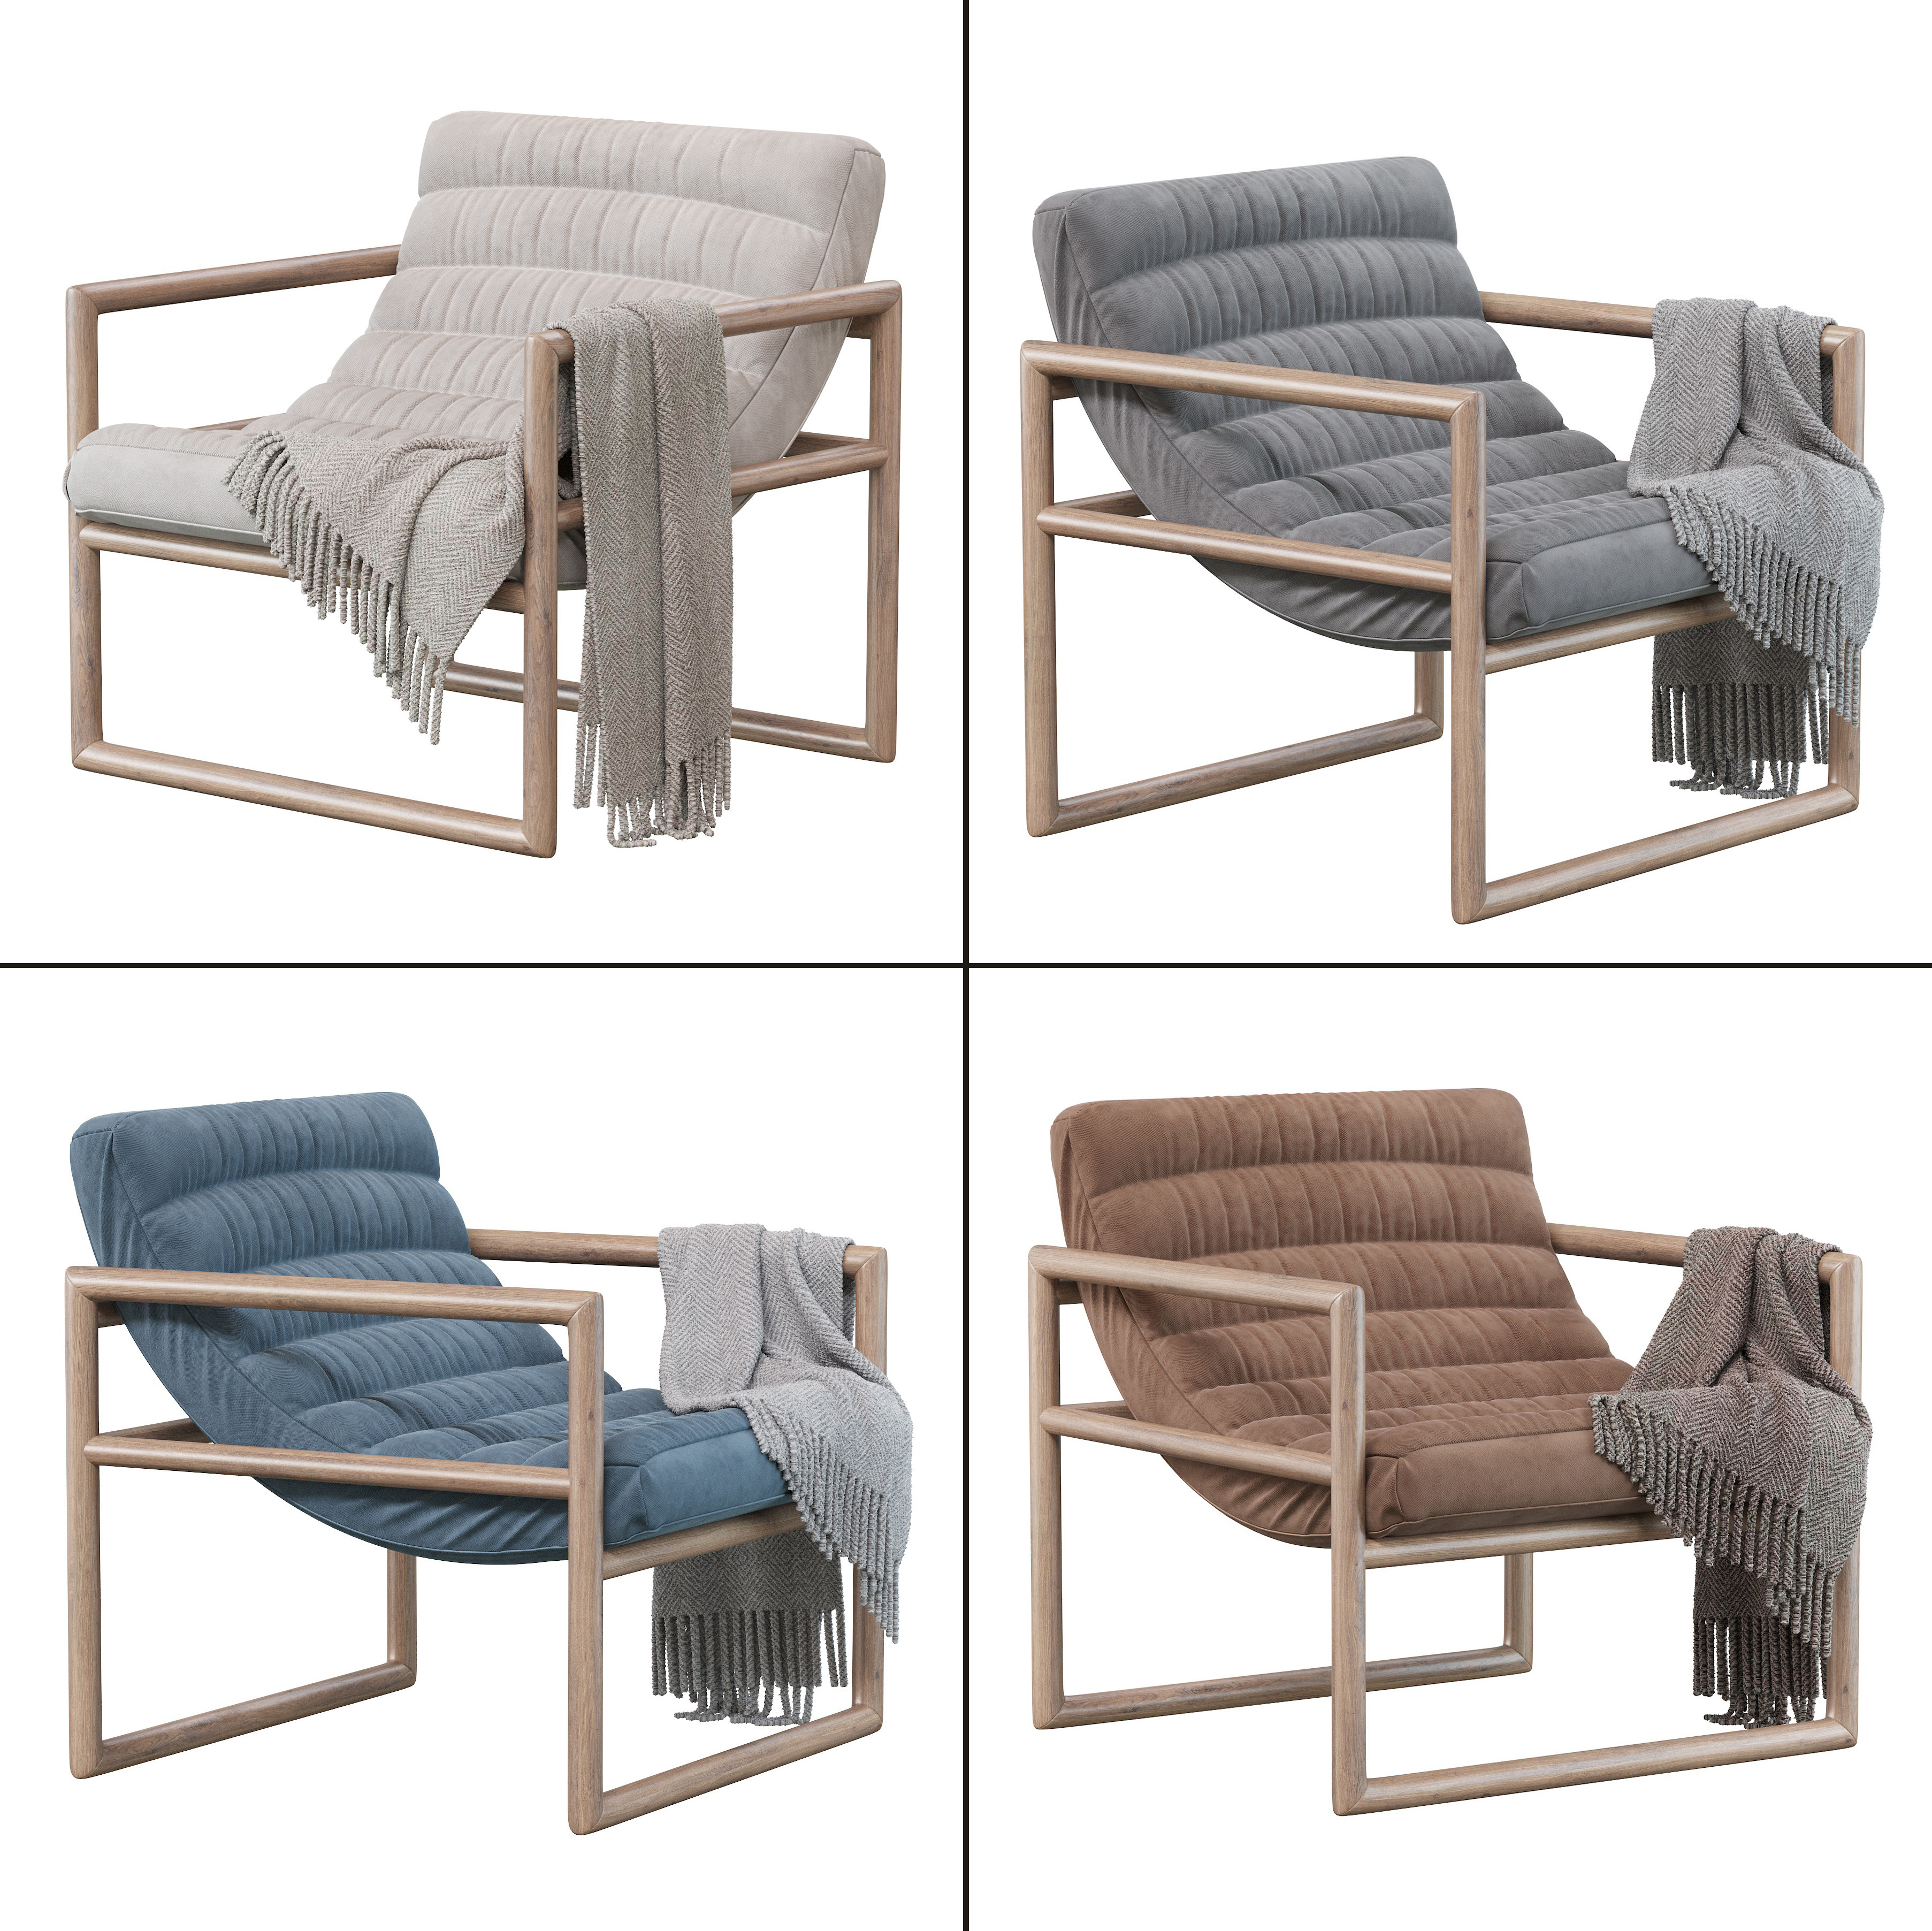 现代扶手休闲椅3d模型下载